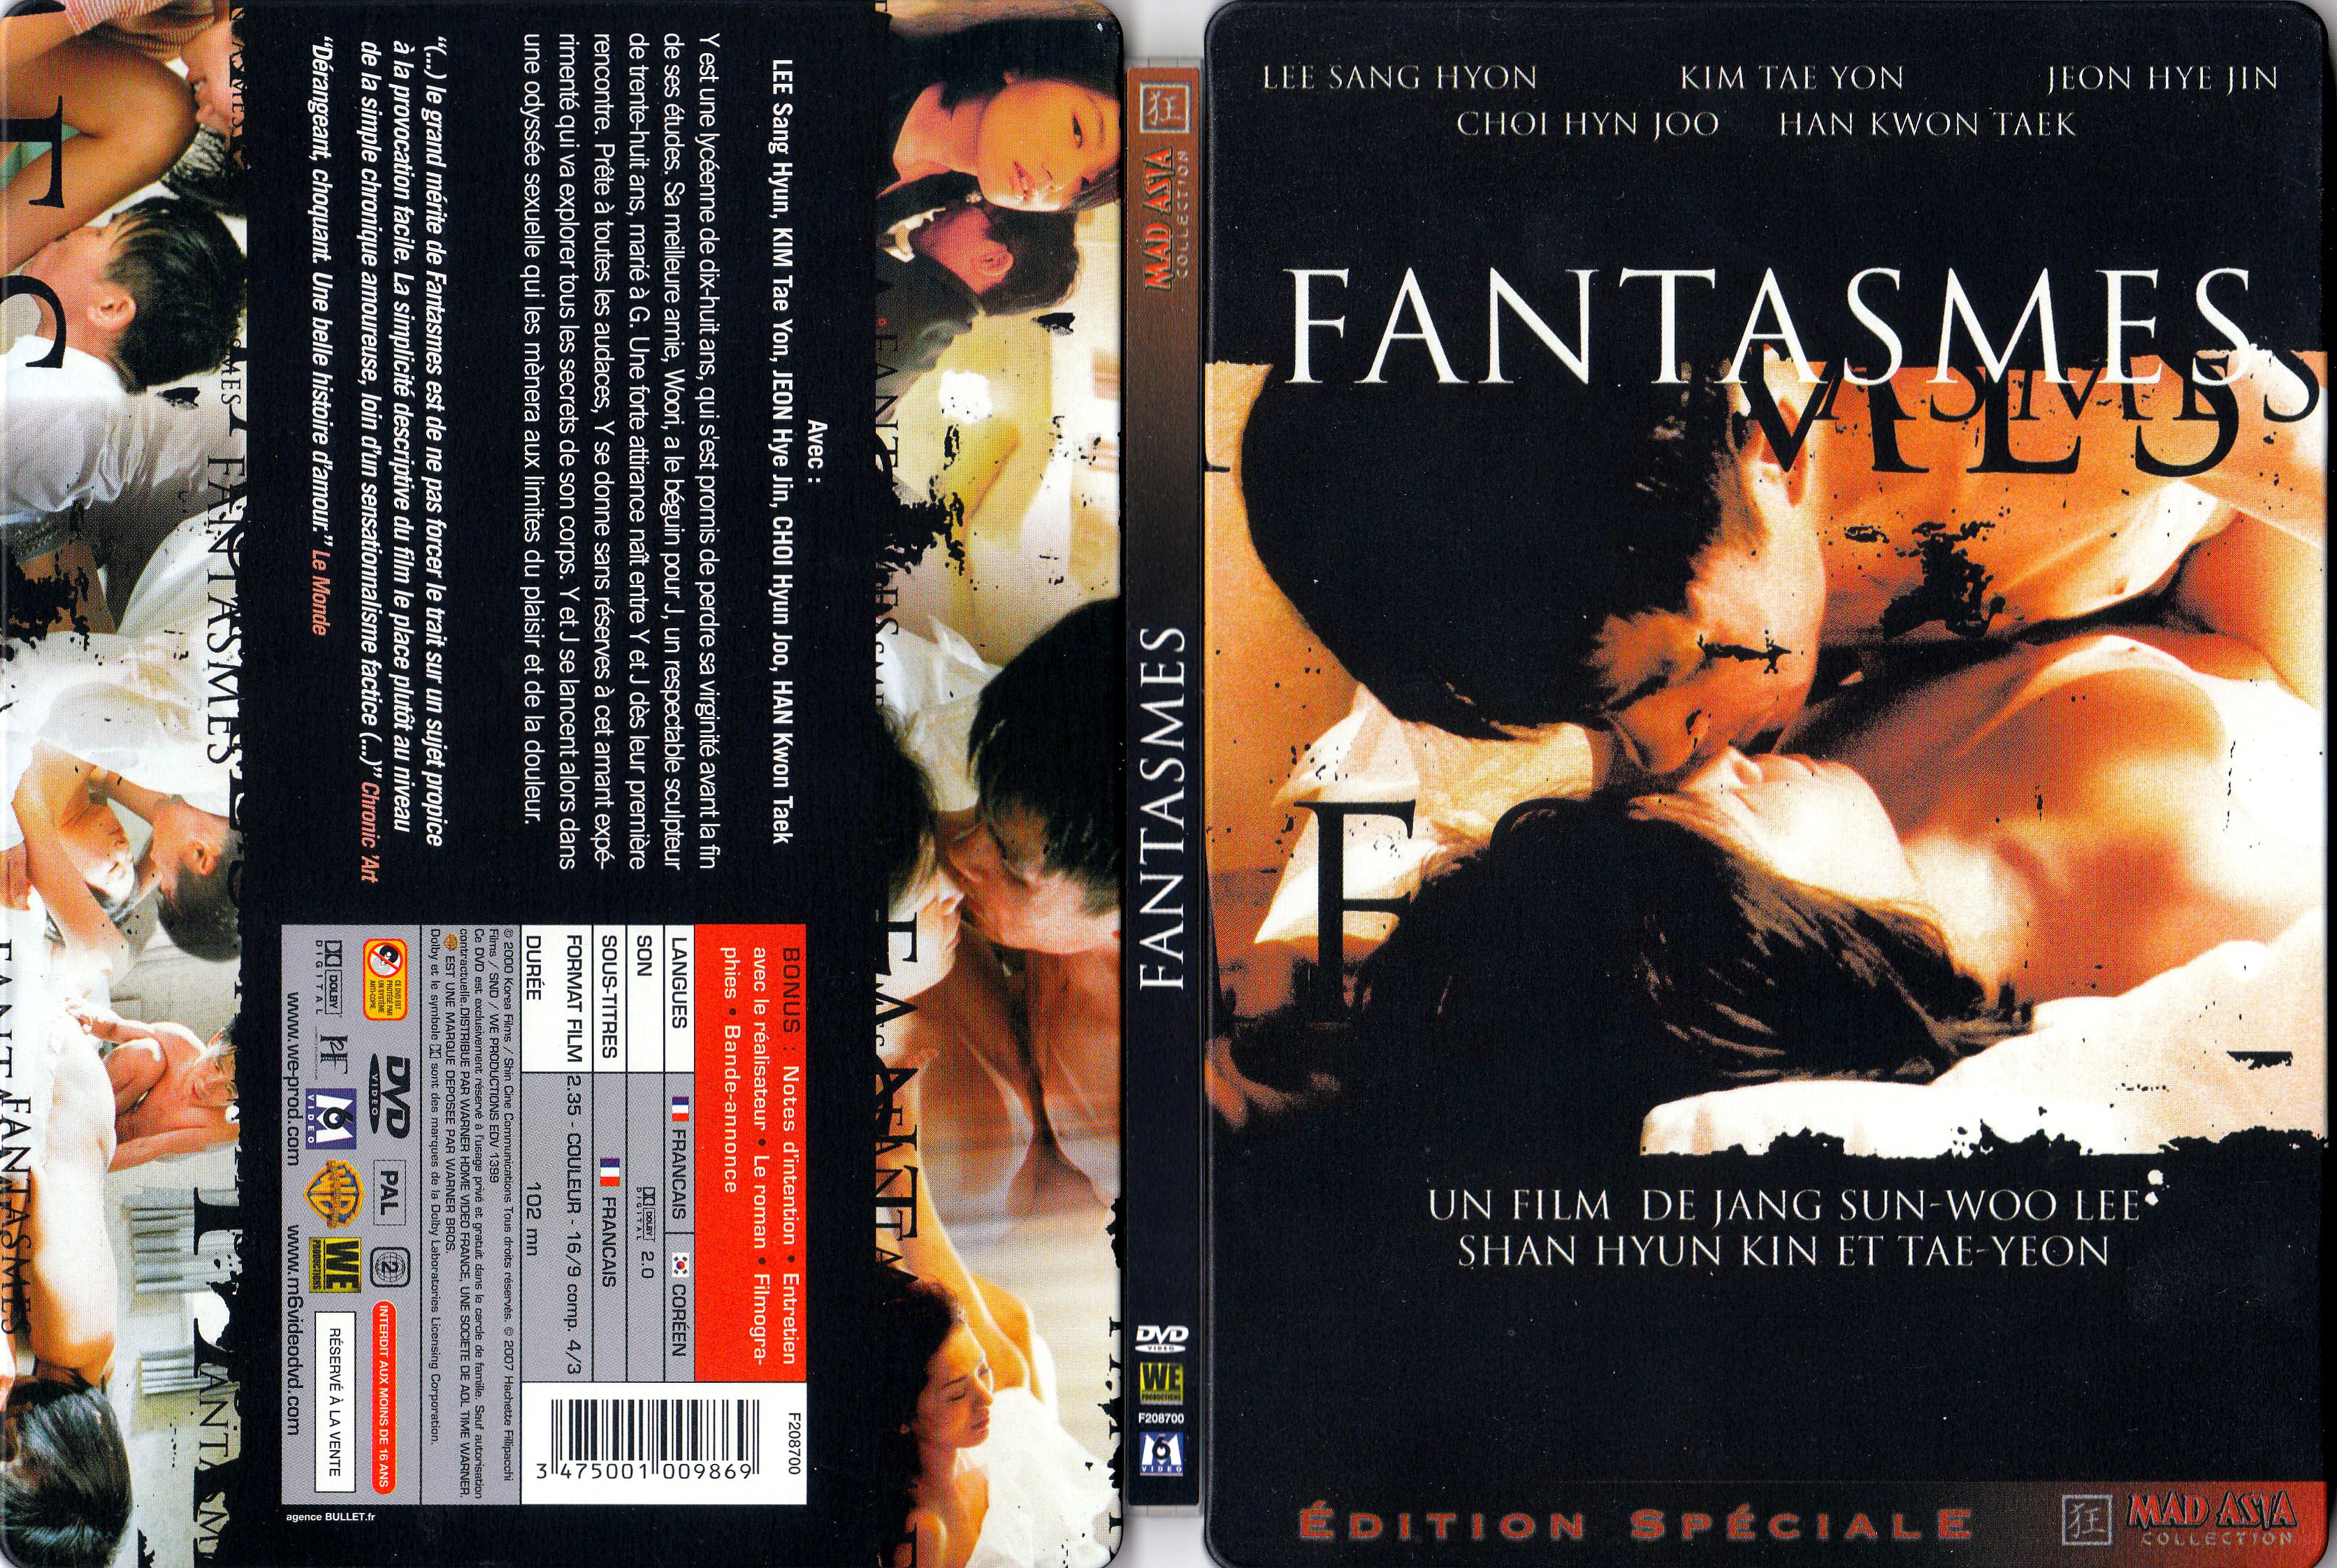 Jaquette DVD Fantasmes v3